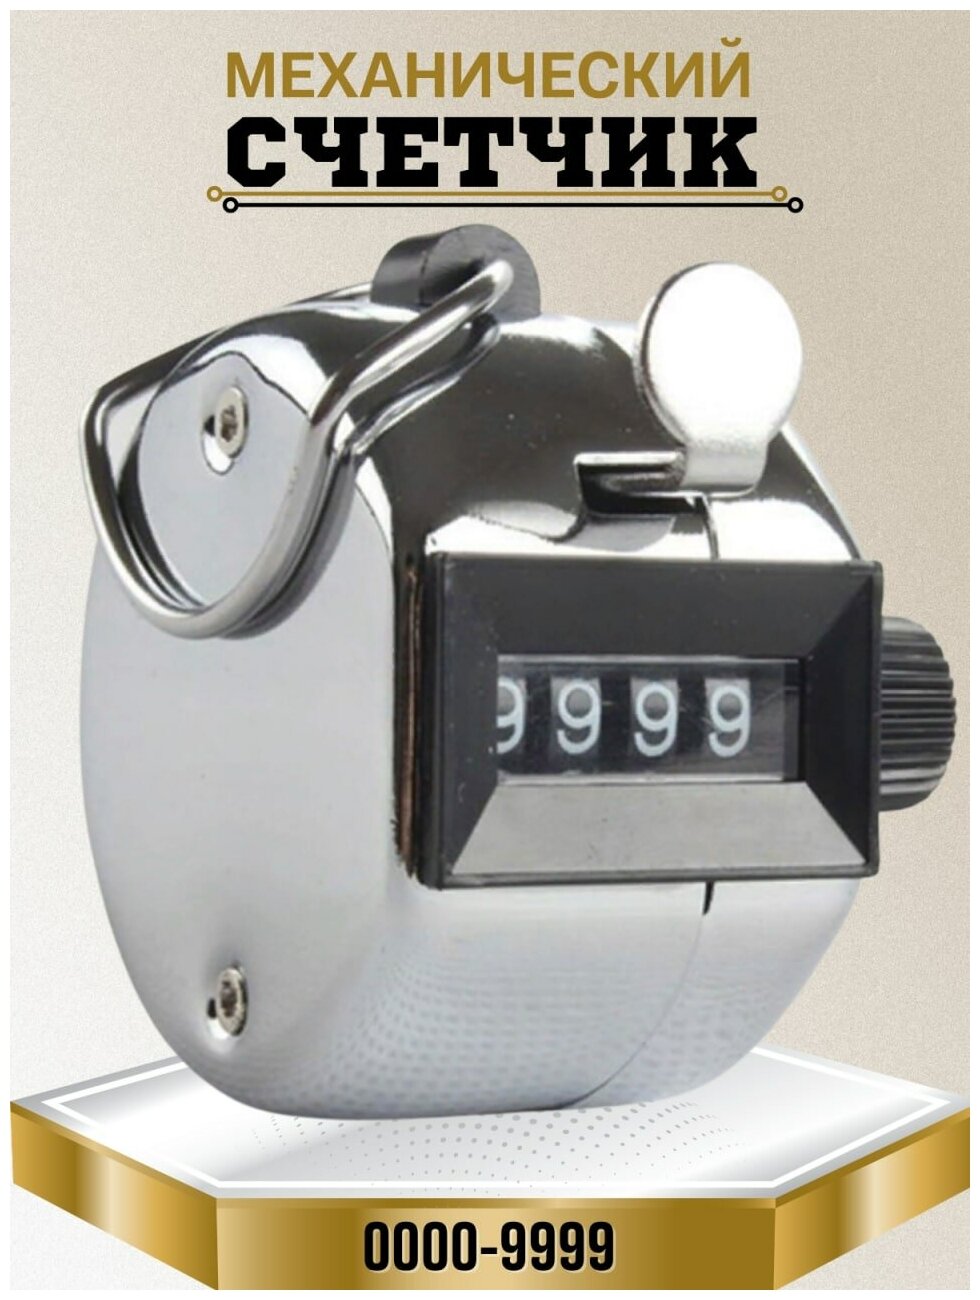 Ручной счетчик механический / кликер для измерения количества рядов людей до 9999 шт.